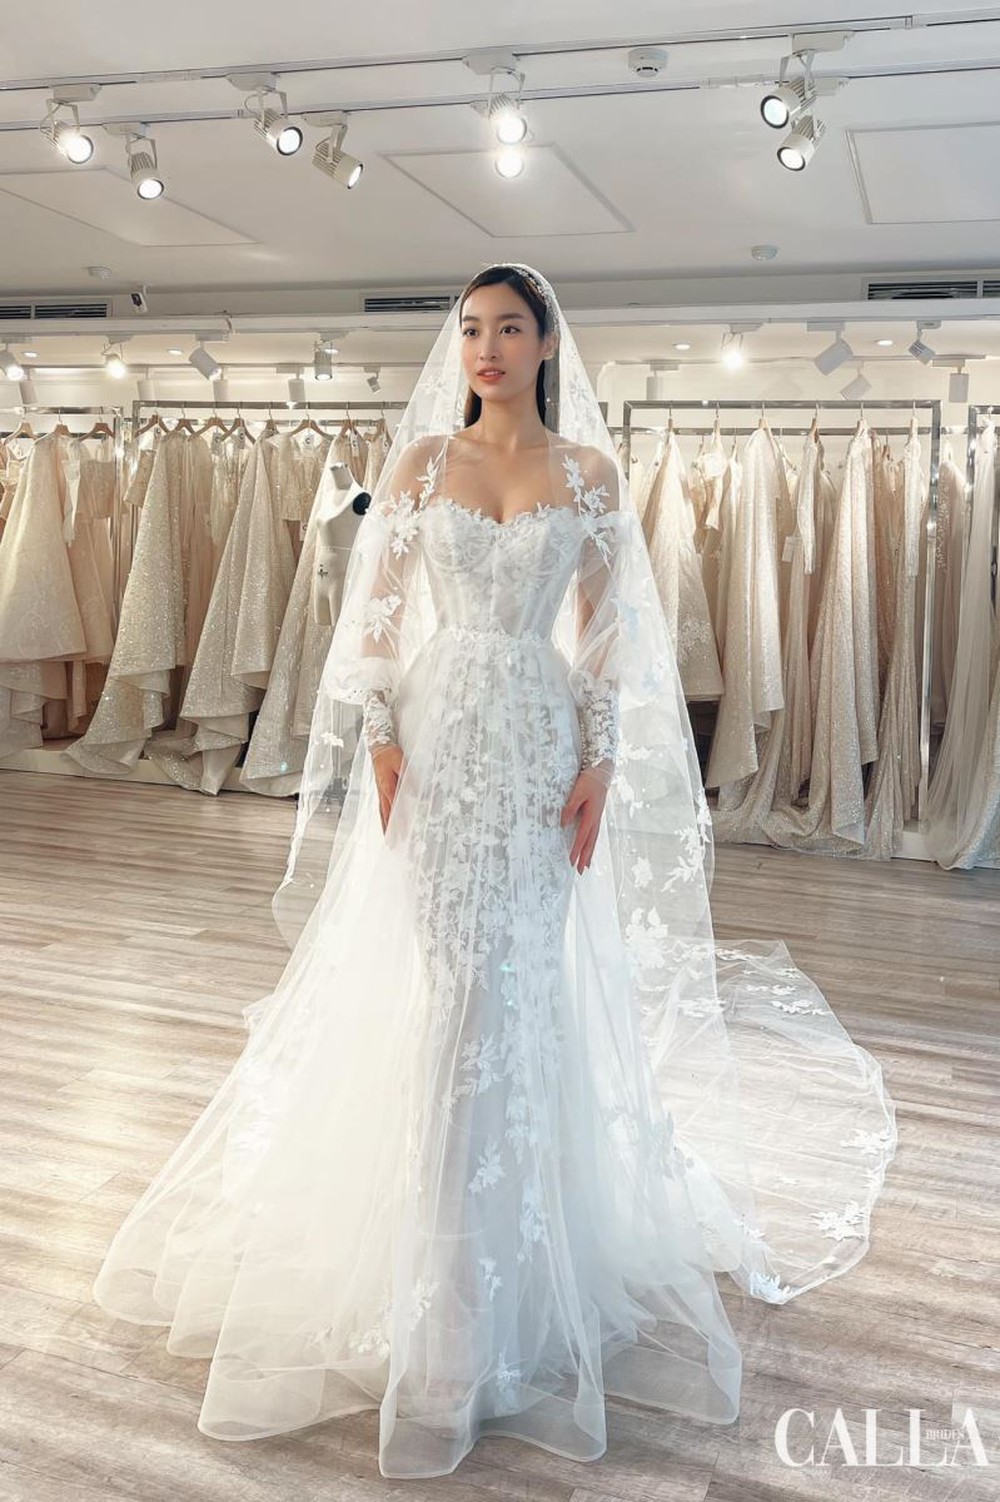 Đỗ Mỹ Linh thử váy cưới trước thềm hôn lễ: Nhan sắc cô dâu mỹ miều, khí chất chuẩn phu nhân hào môn - Ảnh 4.